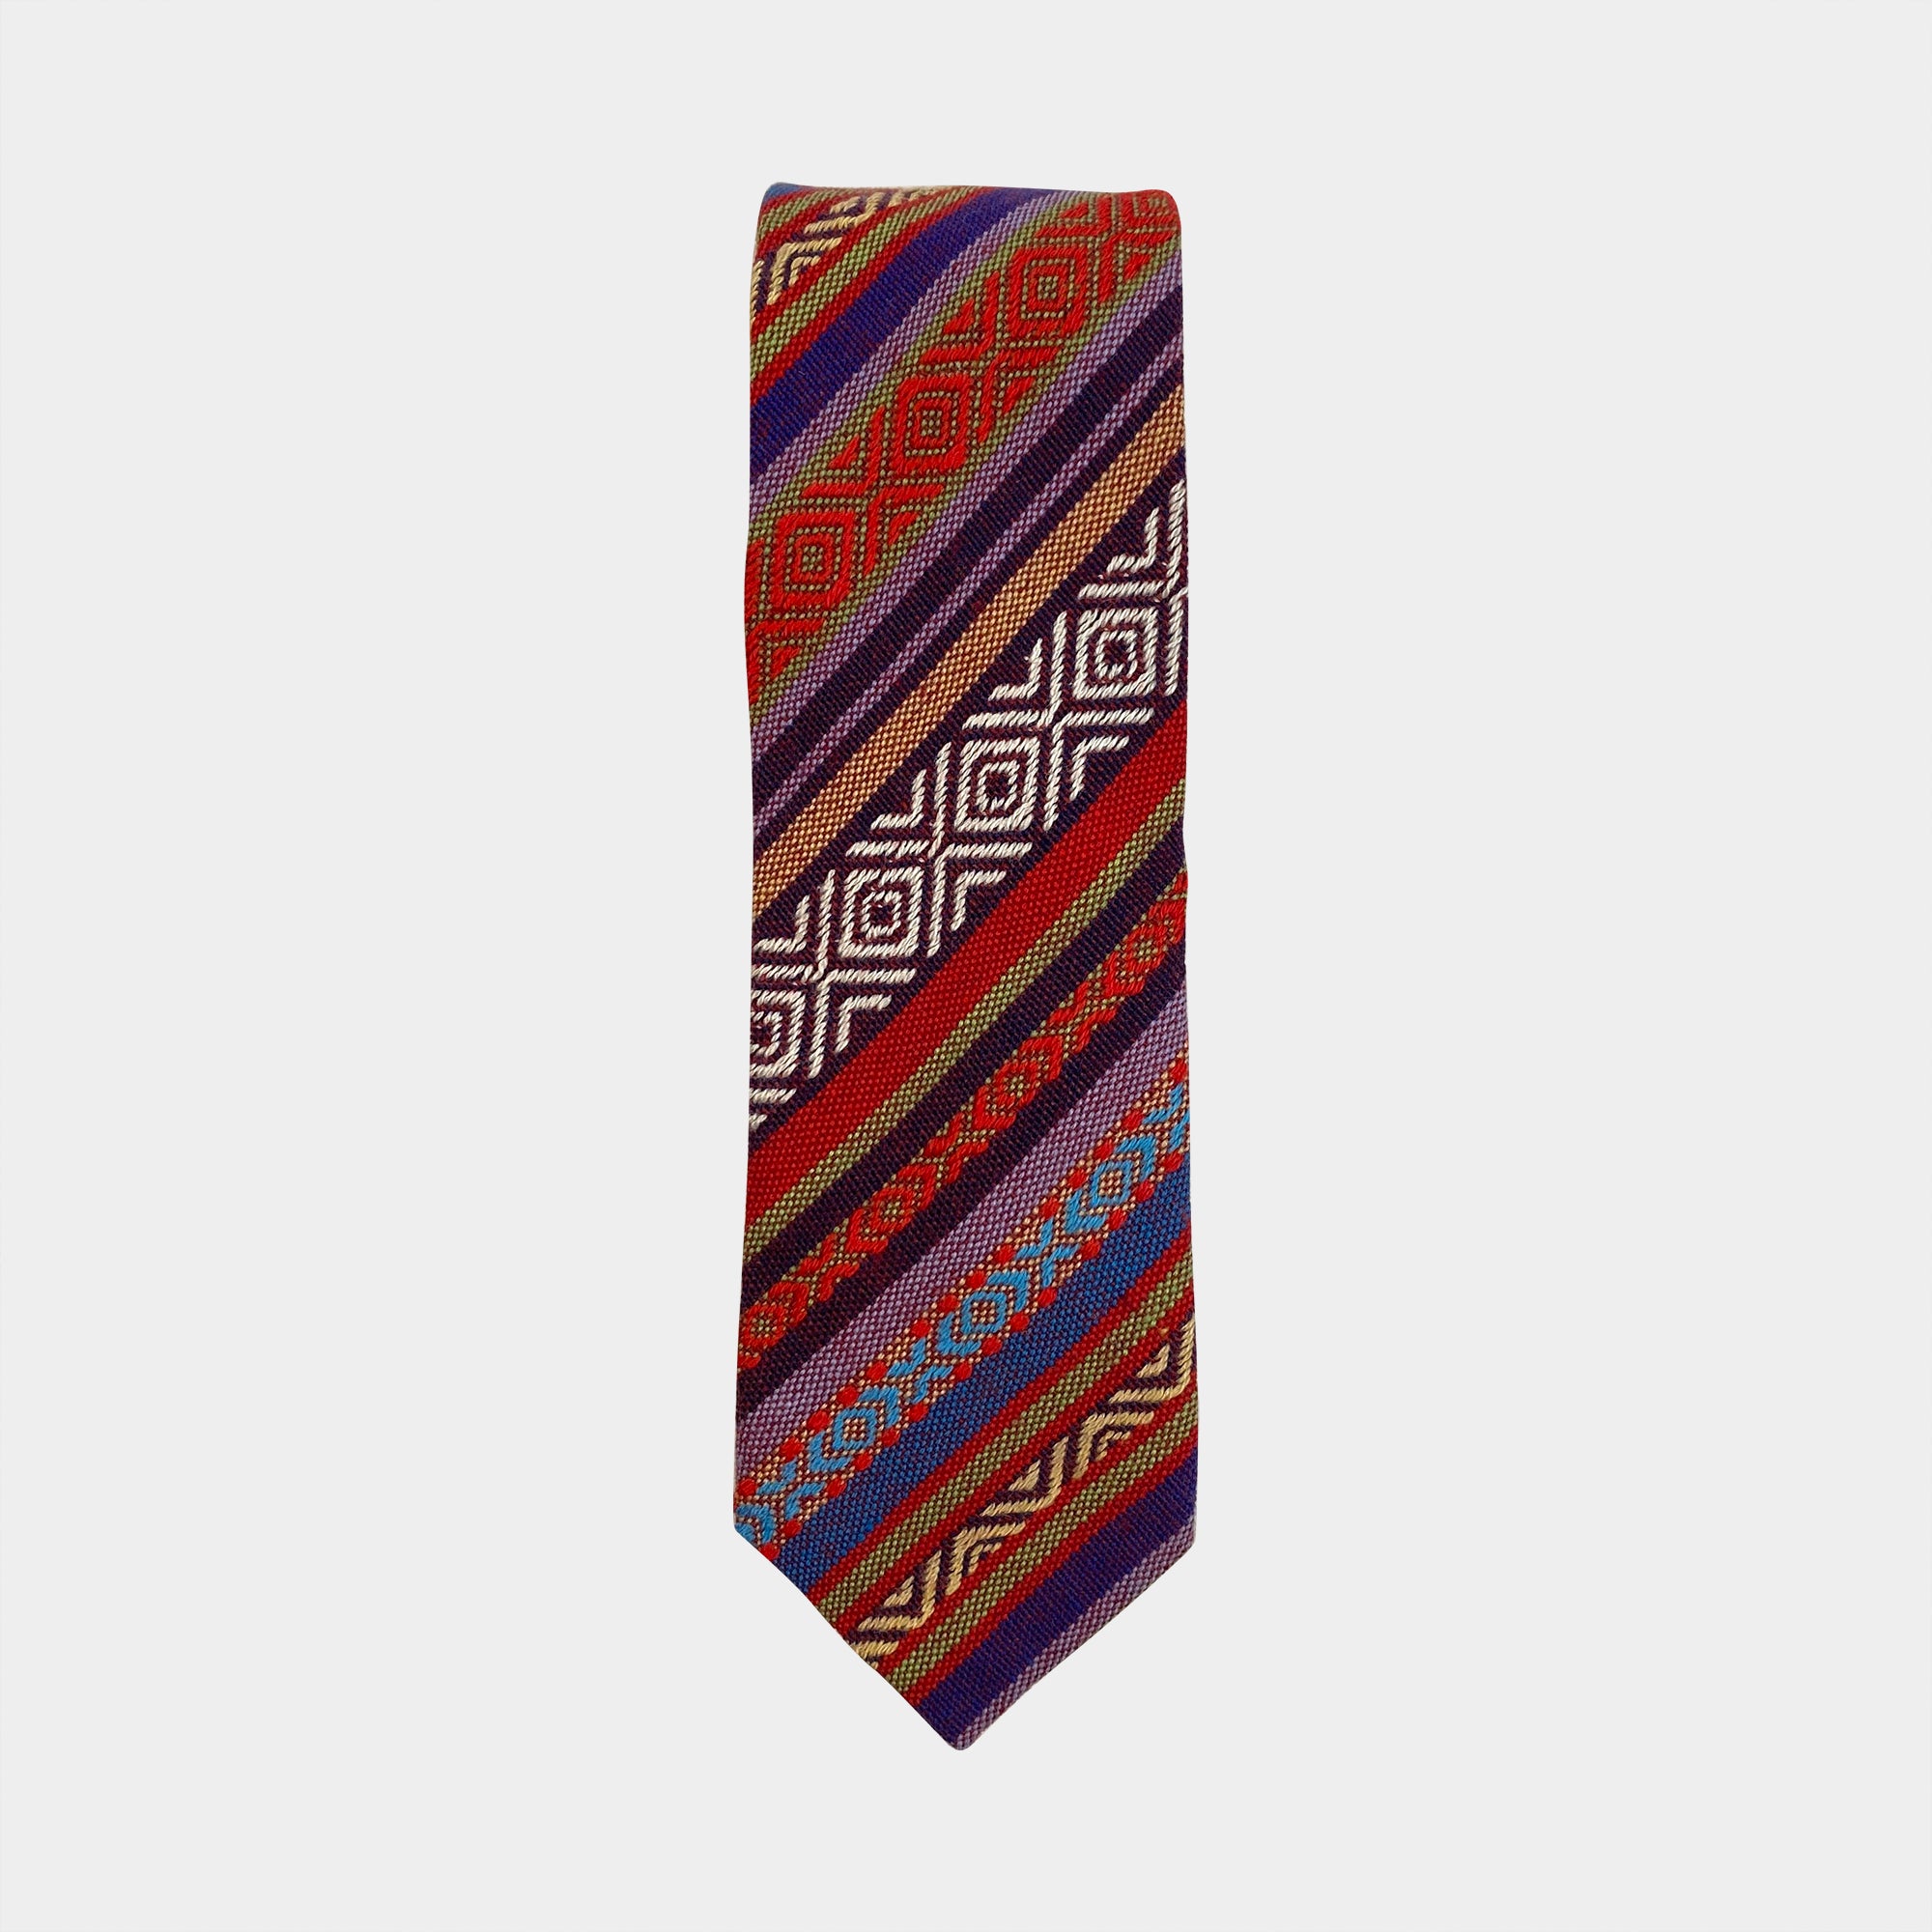 MICAH - Men's Tie